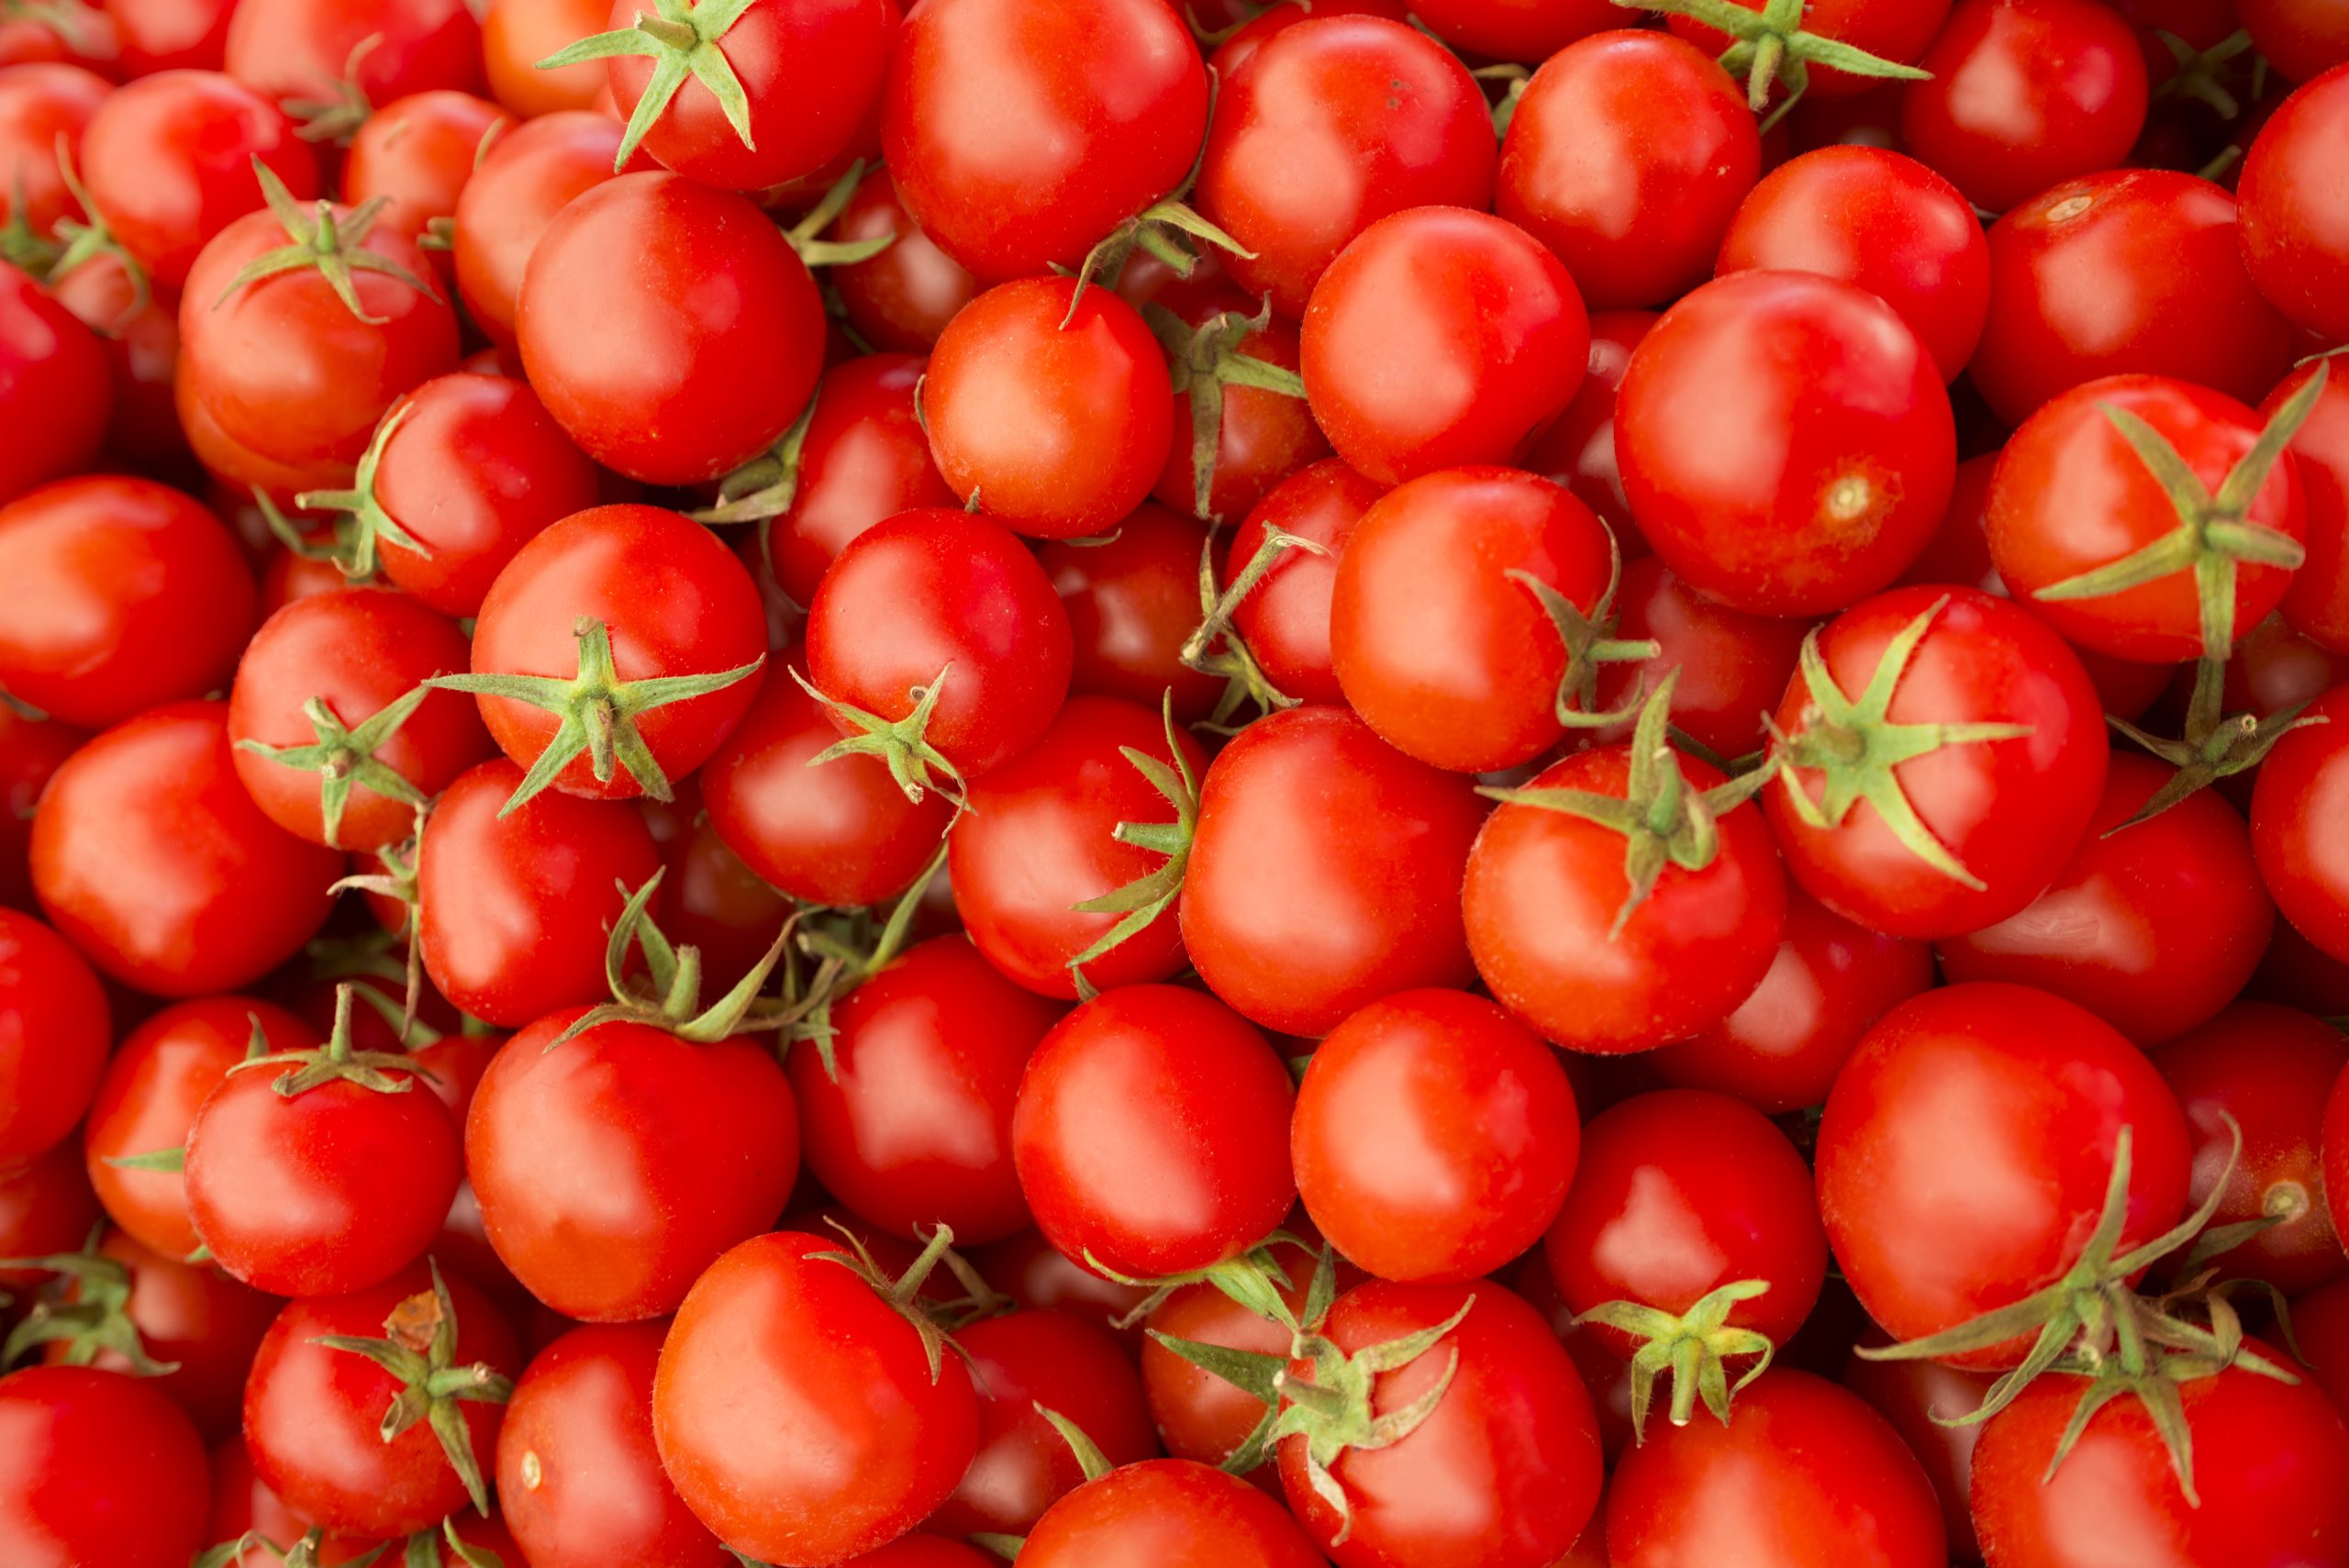 Shutter Stock/ تحتوي حبة طماطم متوسطة الحجم على ما يزيد قليلاً عن 16 مليغراماً من فيتامين سي، وهو وقود مثبت لجهاز المناعة في الجسم.